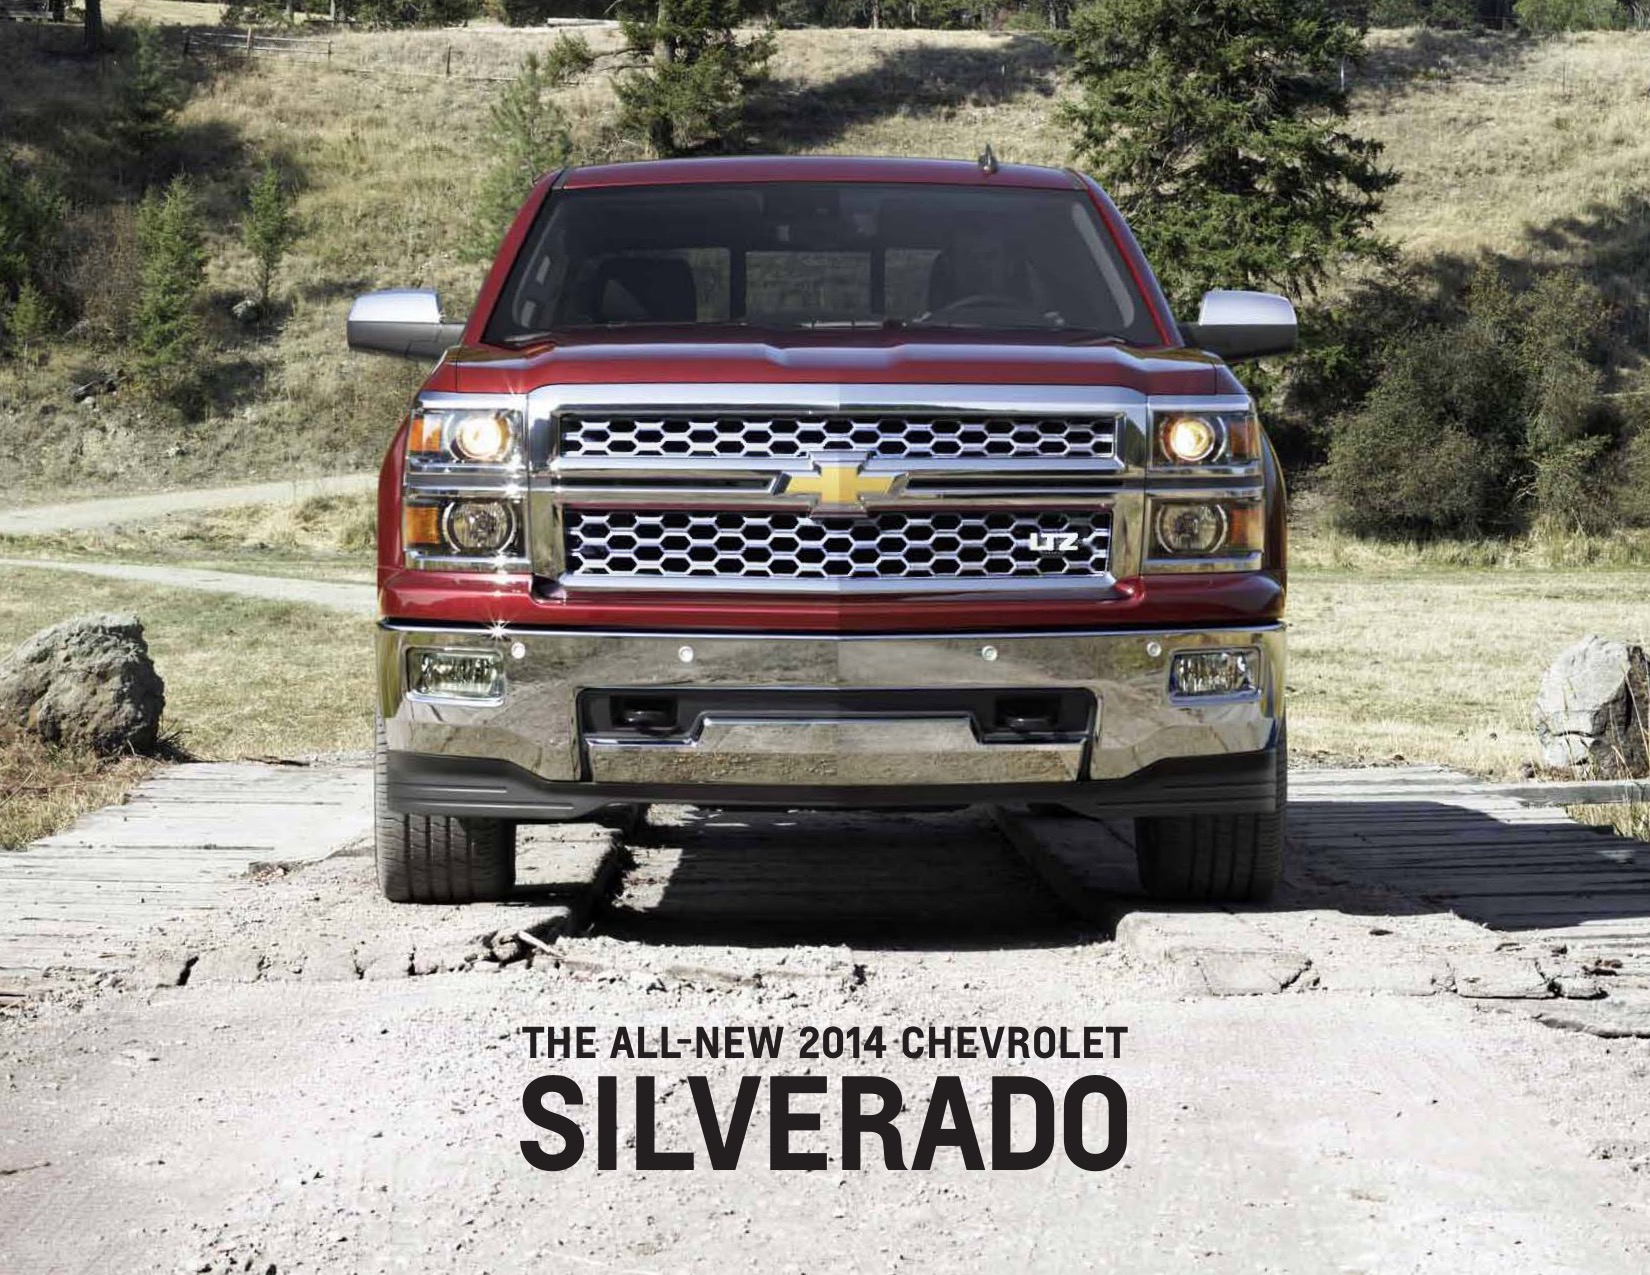 2014 Chevrolet Silverado Brochure